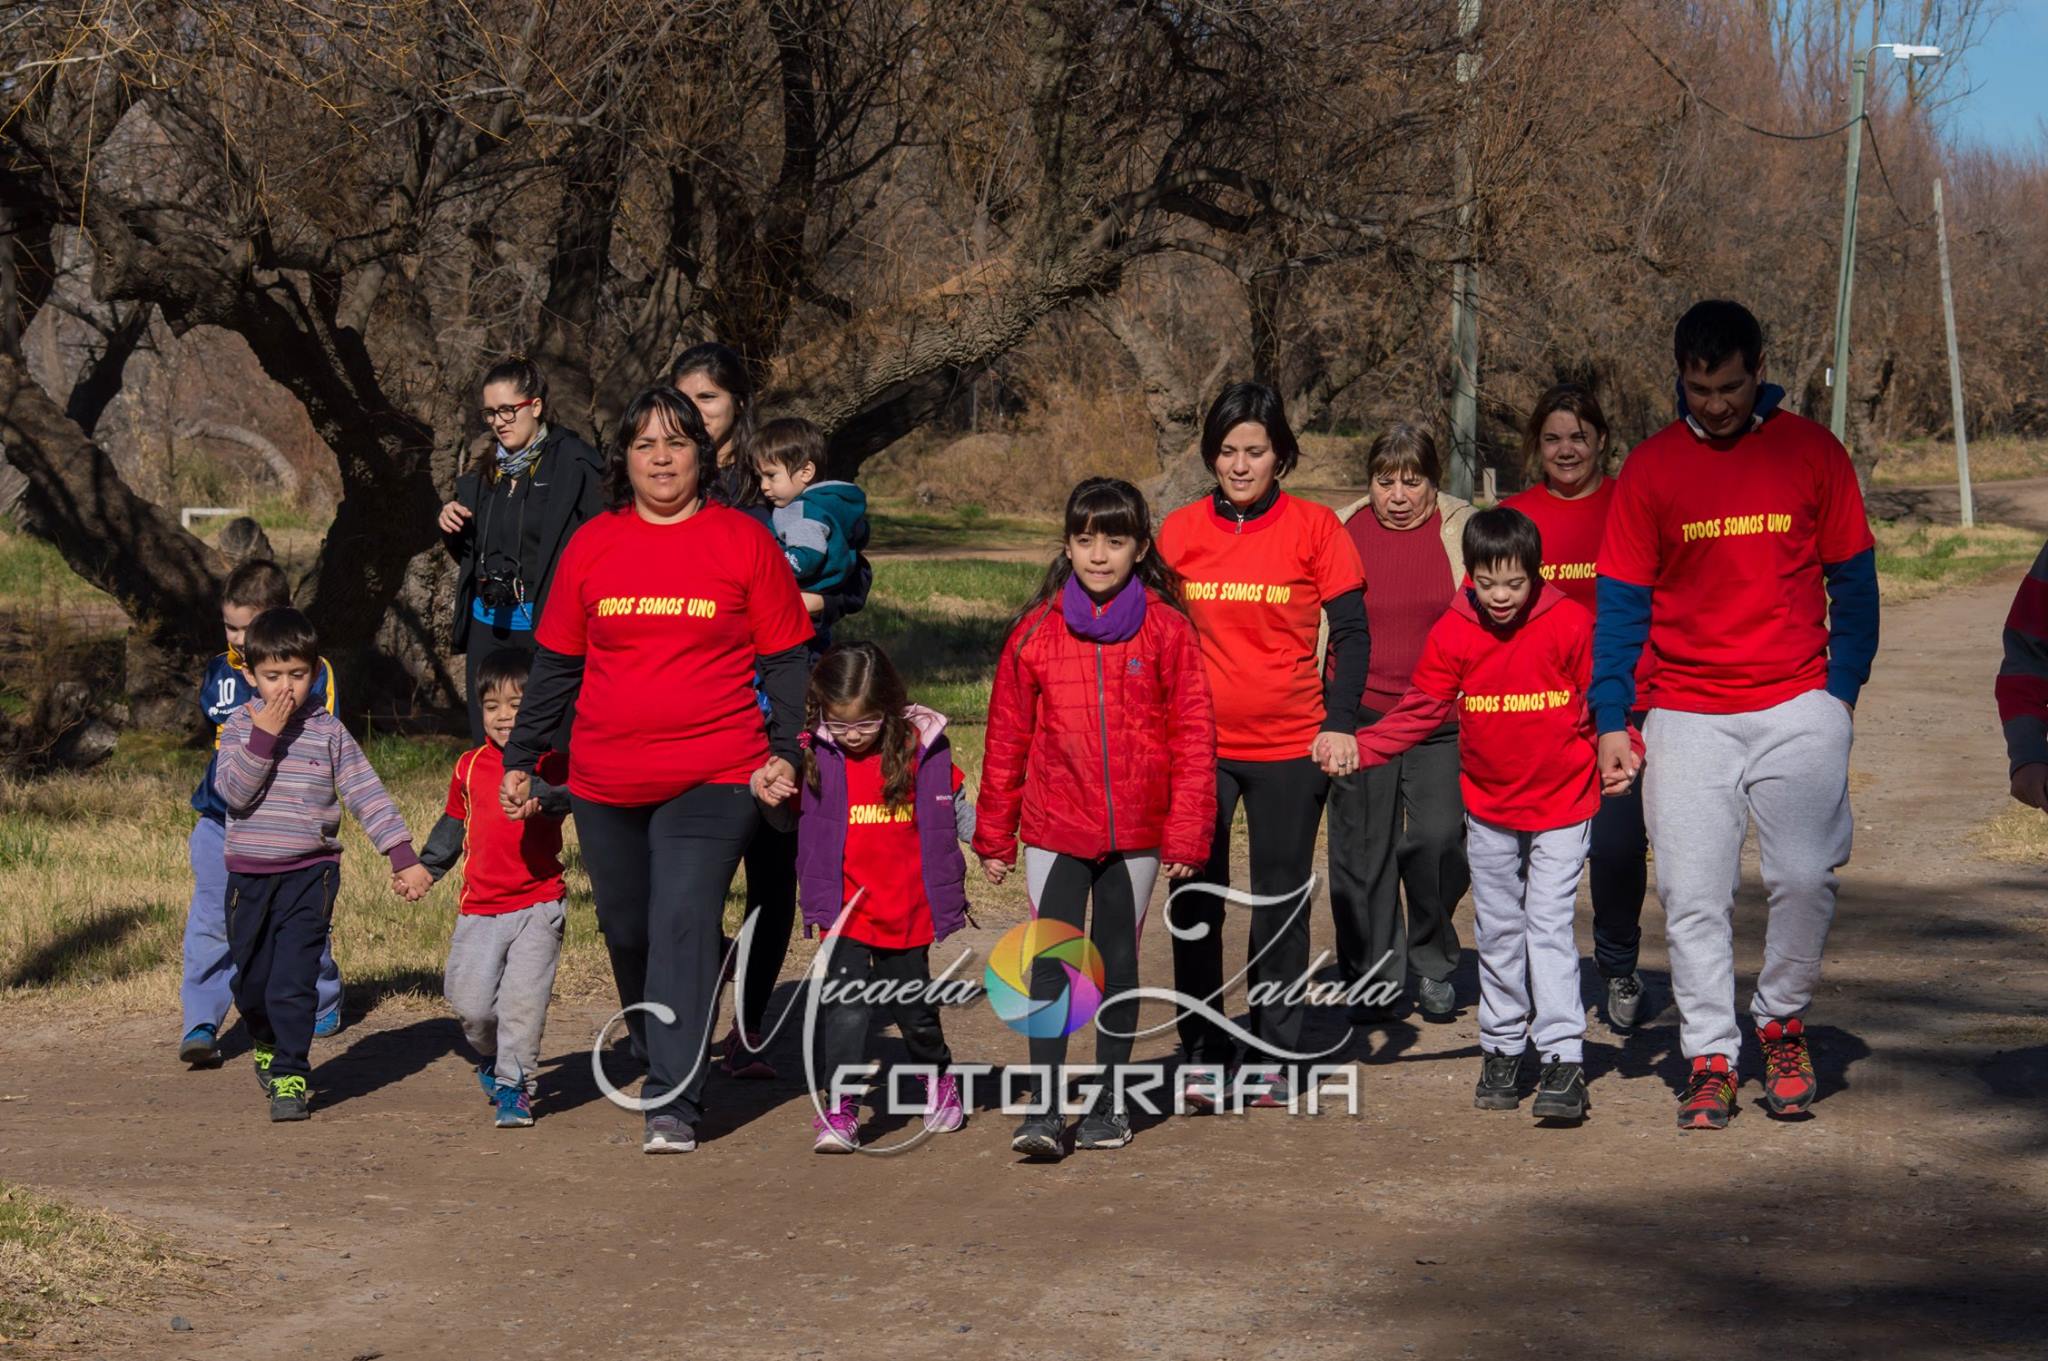 Fotografía de un grupo de adultos y niños caminando juntos en un parque.